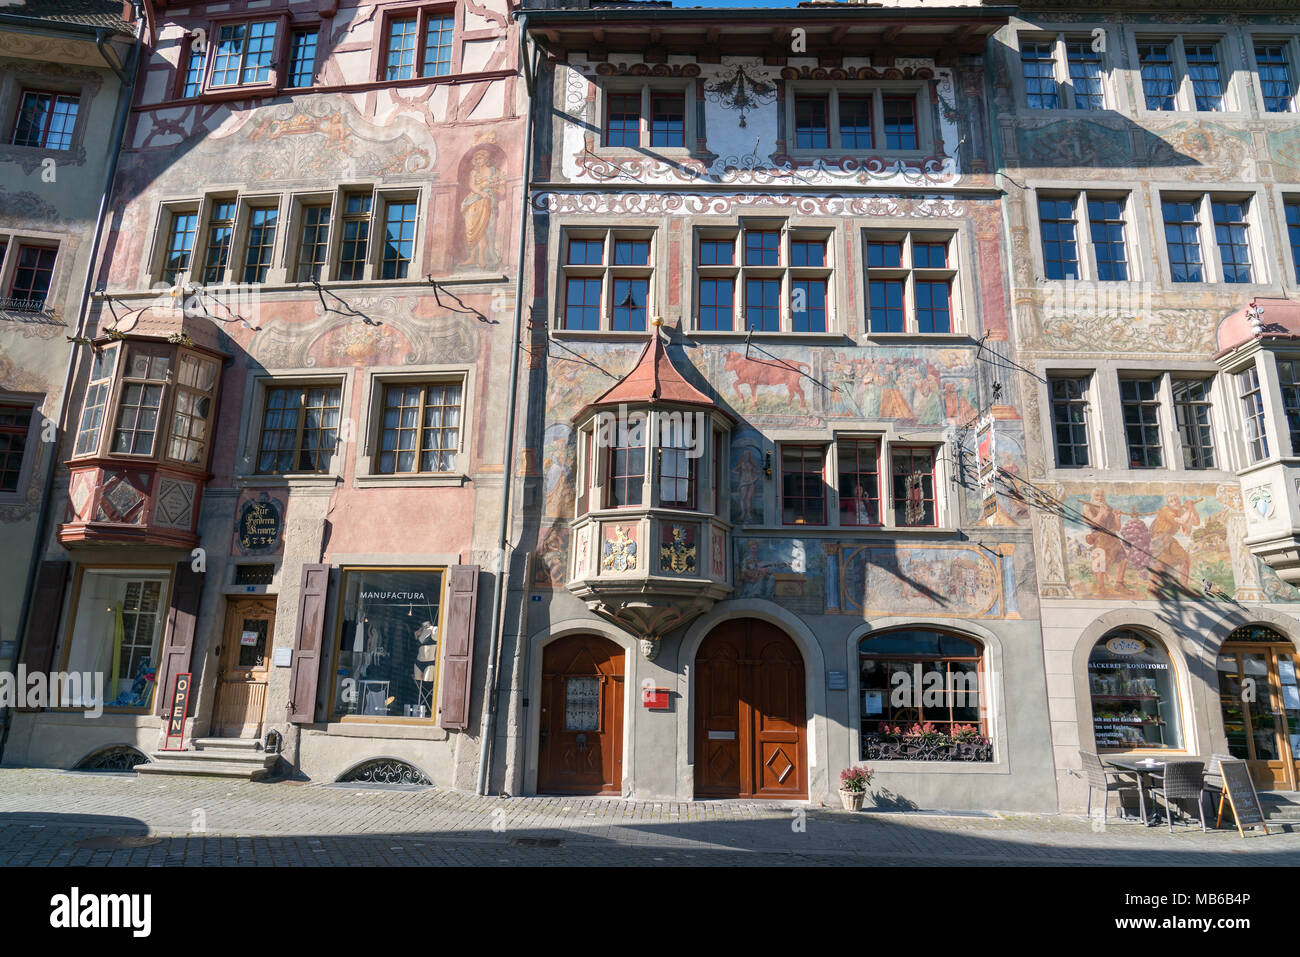 STEIN AM RHEIN, SWITZERLAND - MARCH 24, 2018 : Colorful painted old building in historic swiss town Stein Am Rhein in Switzerland Stock Photo